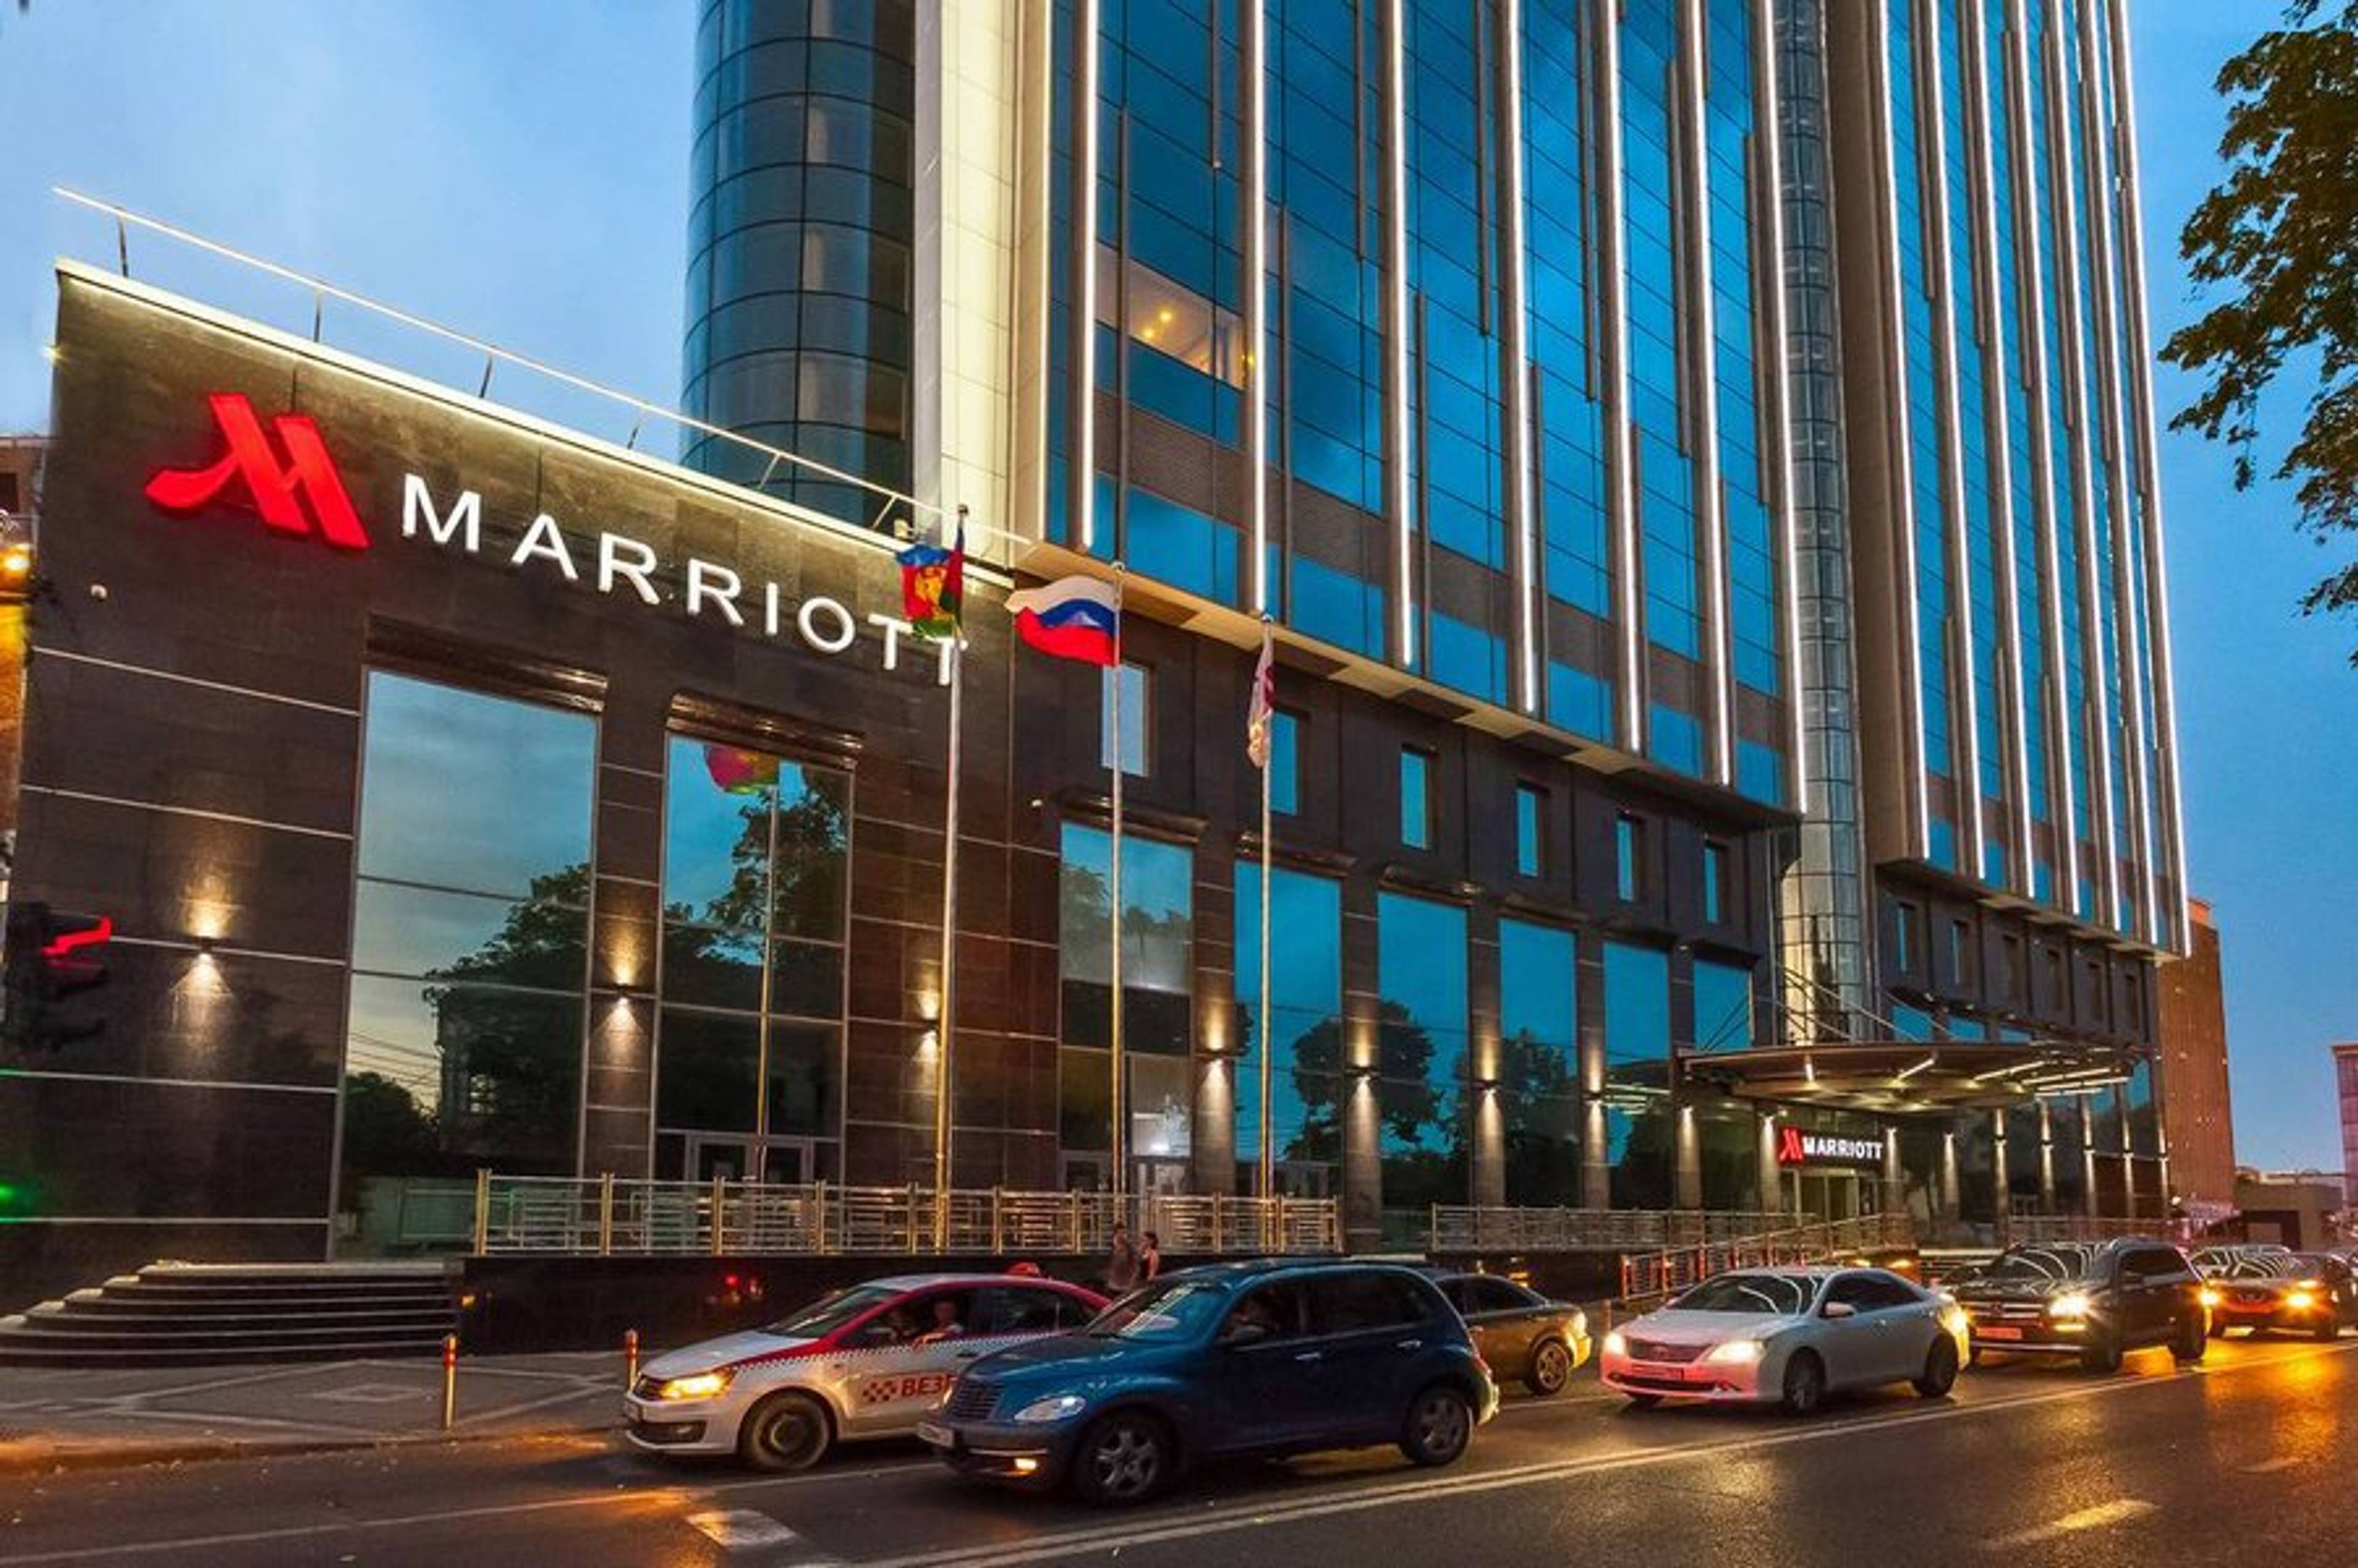 Marriott Hotel Krasnodar